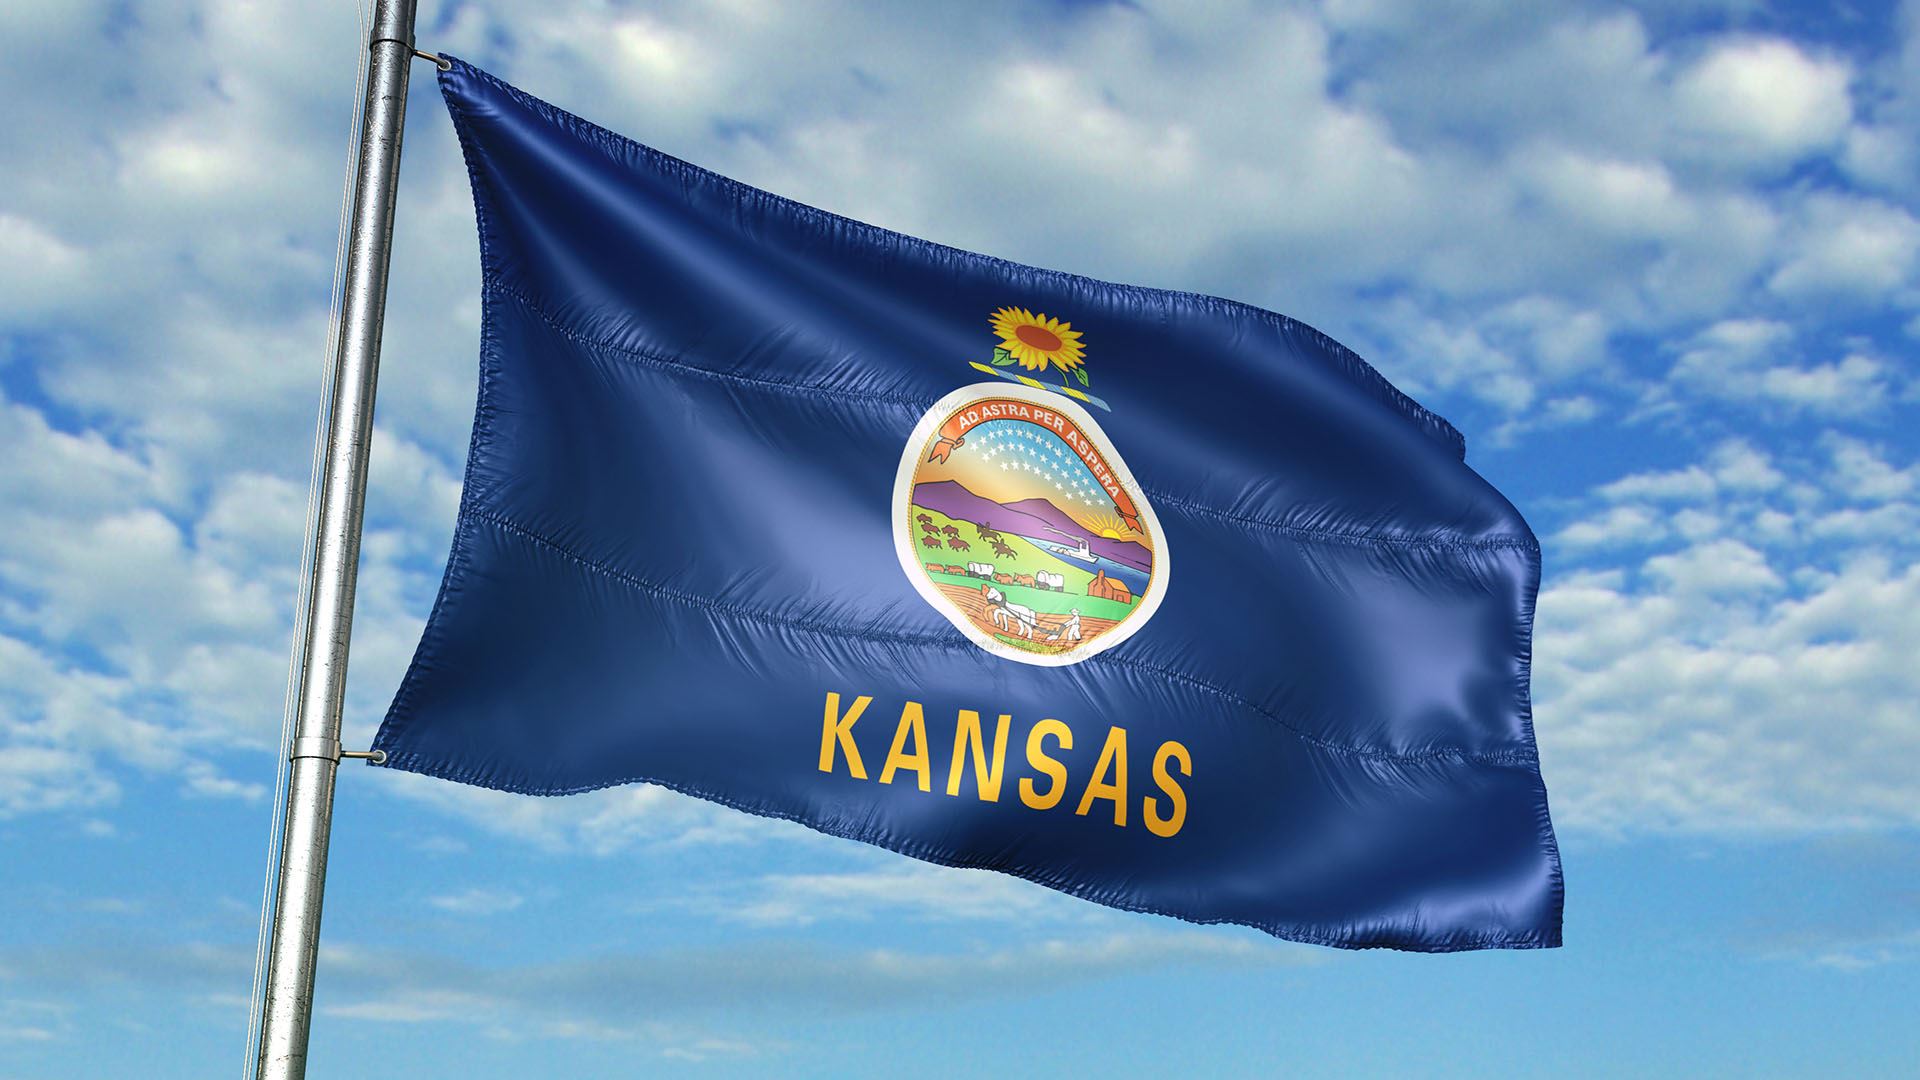 Kansas flag flying in the wind